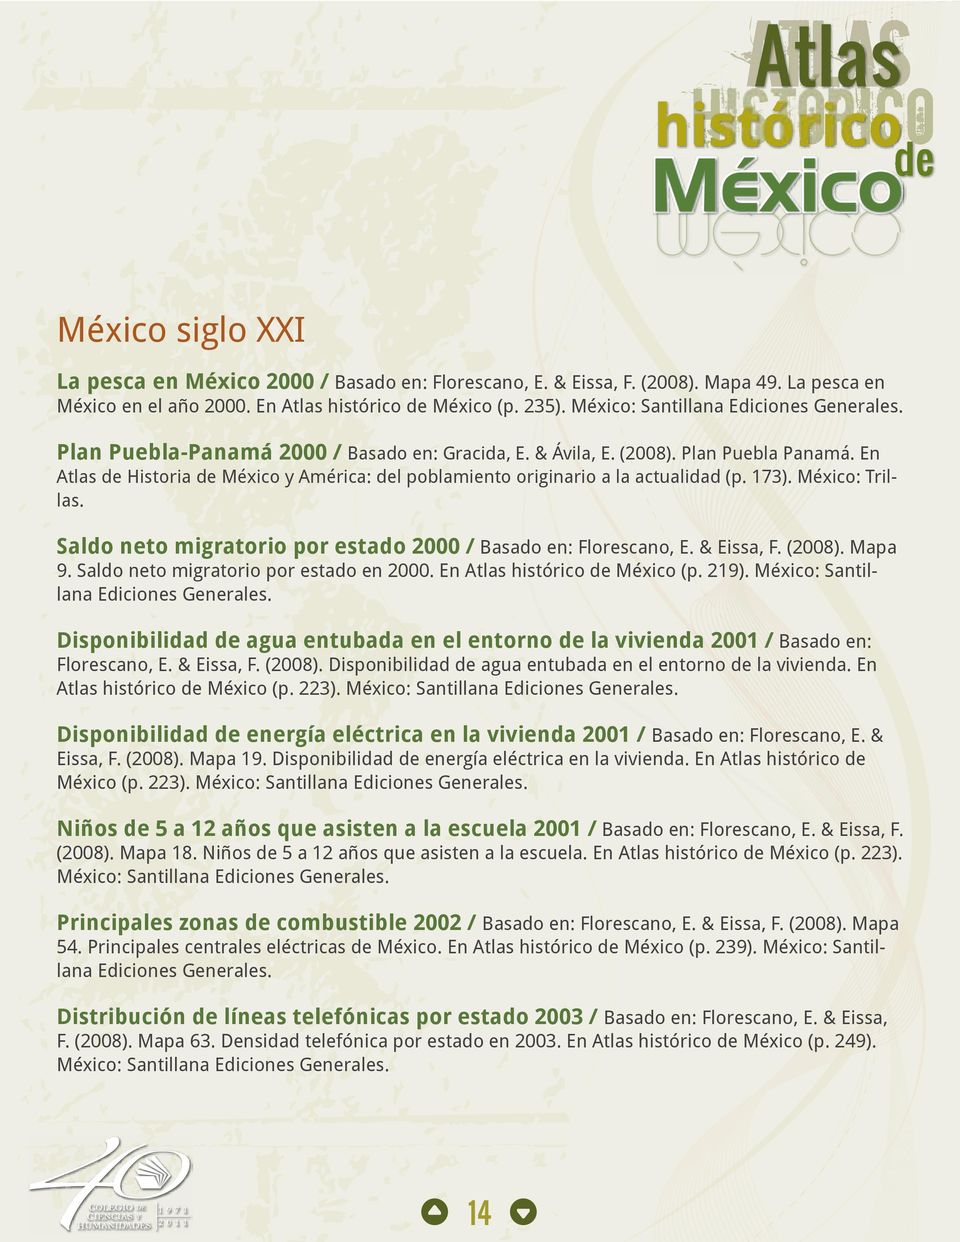 En Atlas de Historia de México y América: del poblamiento originario a la actualidad (p. 173). México: Trillas. Saldo neto migratorio por estado 2000 / Basado en: Florescano, E. & Eissa, F. (2008).